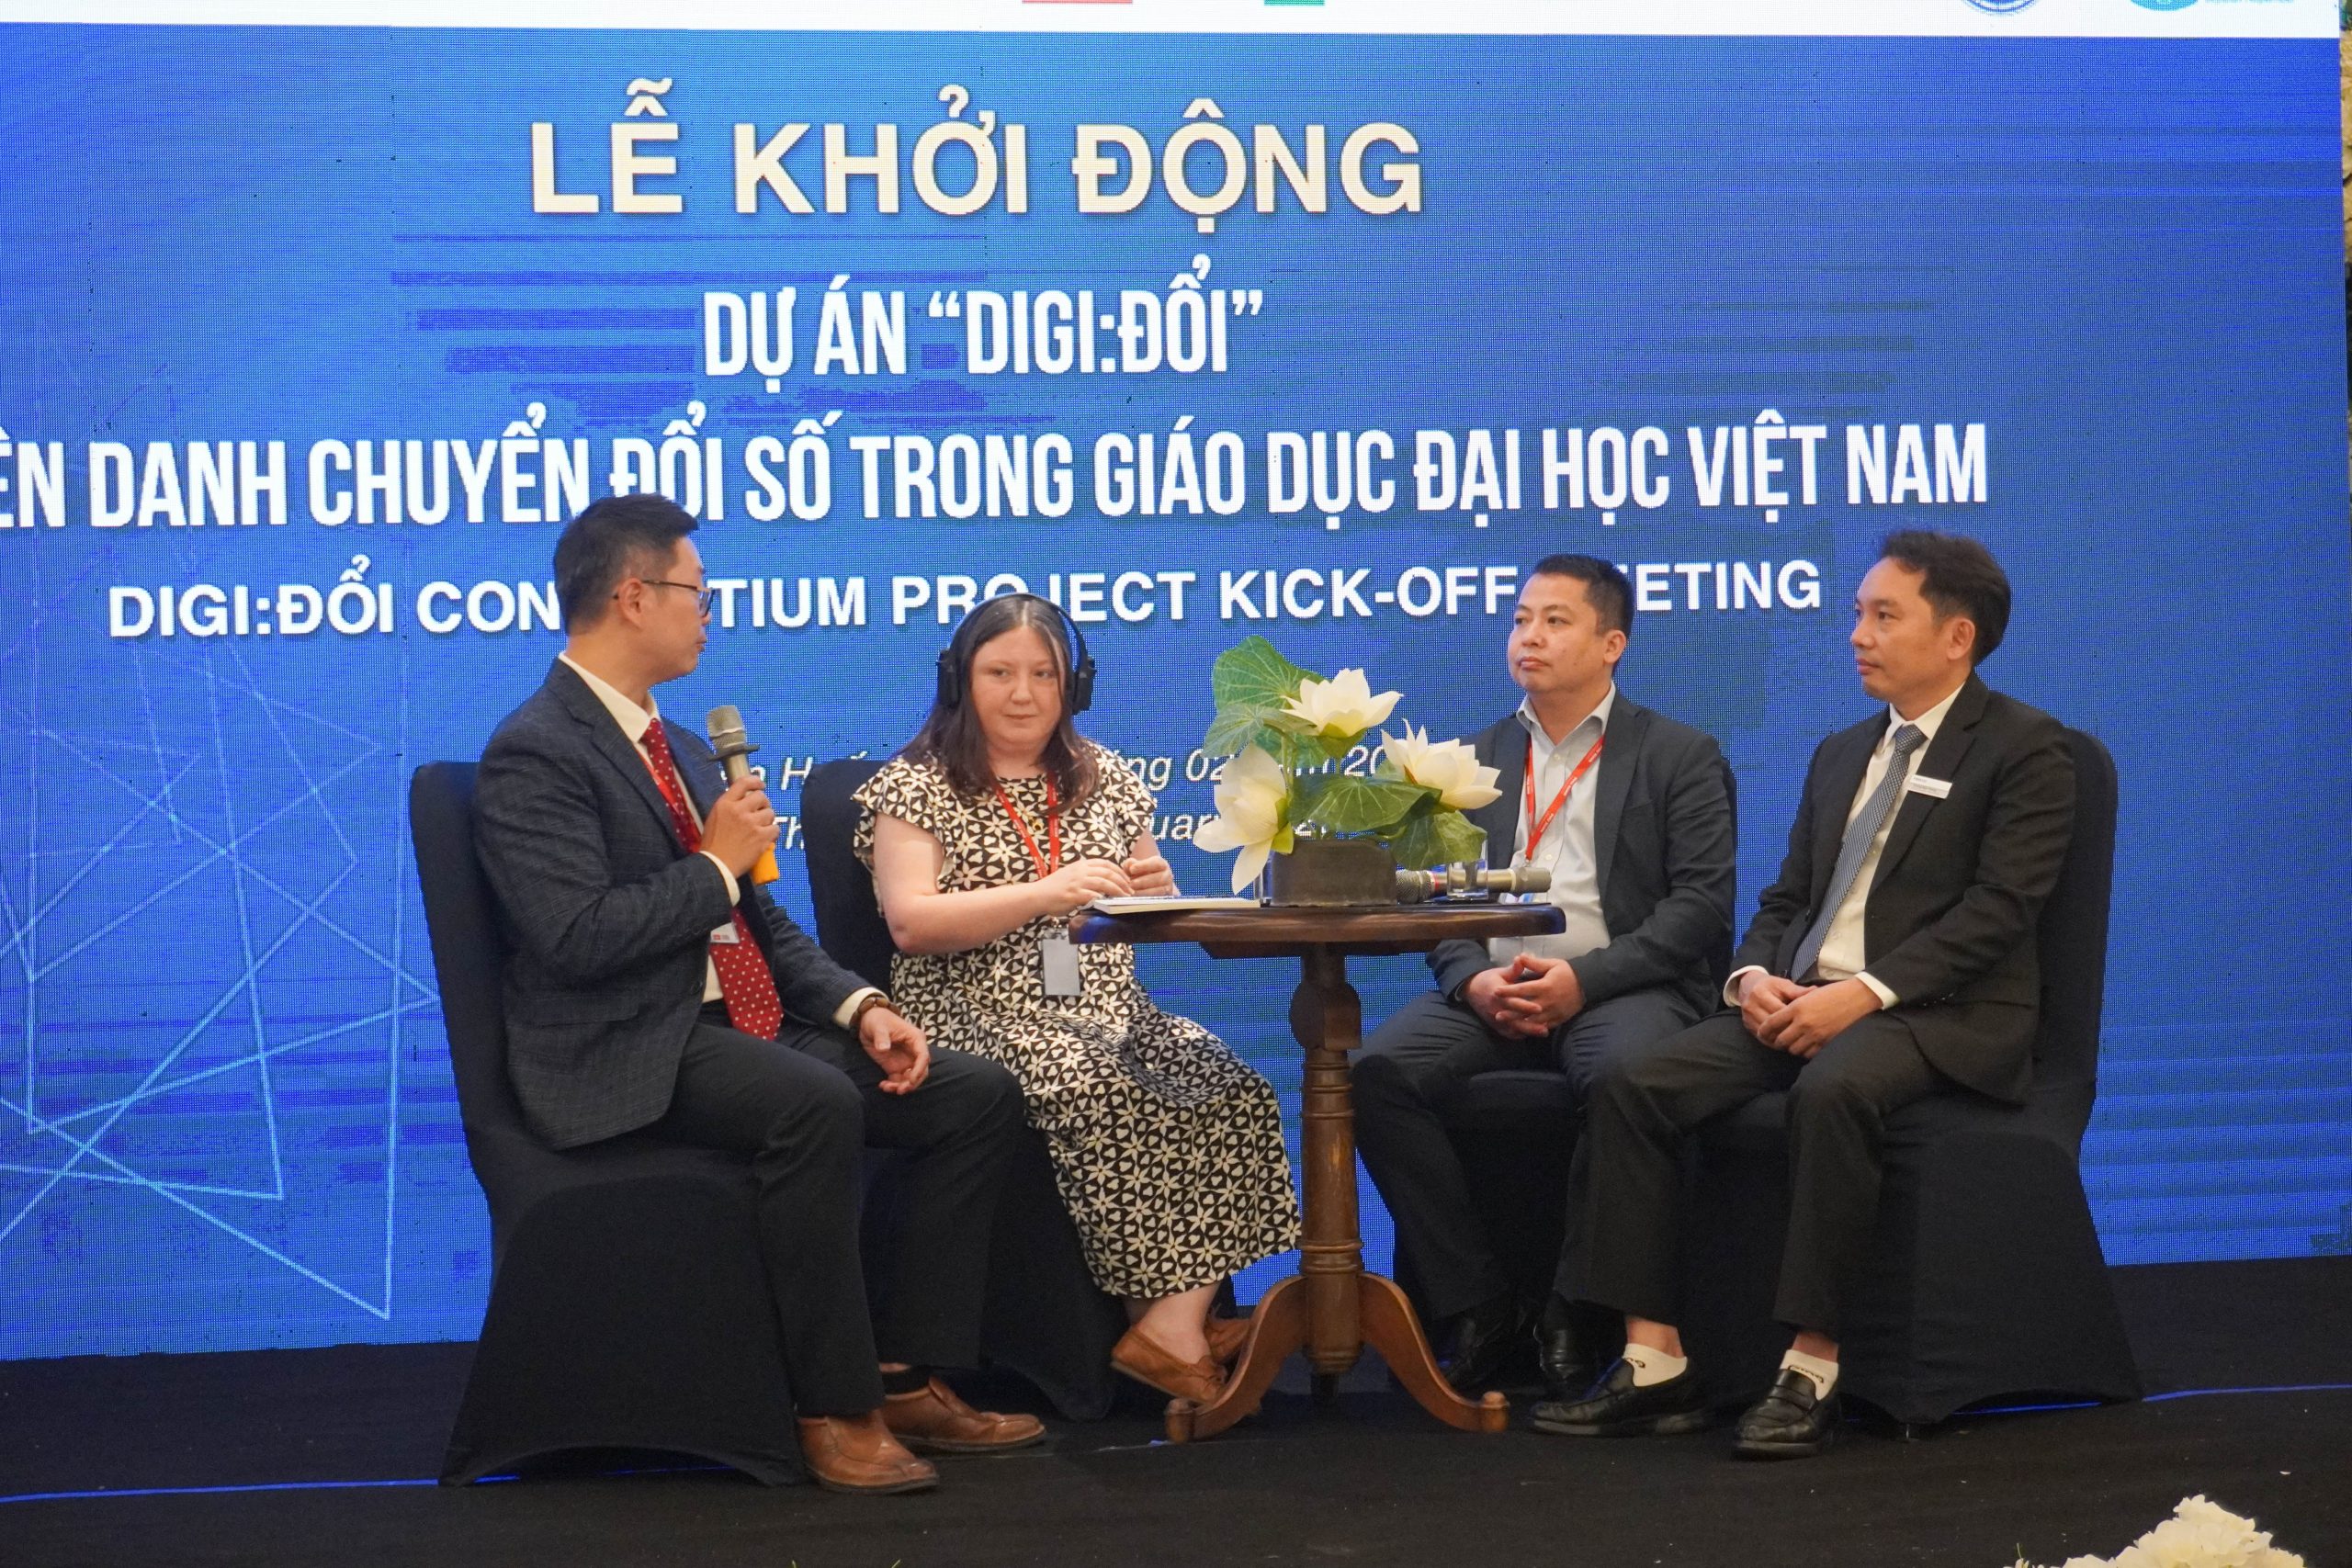 Liên danh Chuyển đổi số Digi: Đổi thu hút nhiều sự quan tâm tại Việt Nam